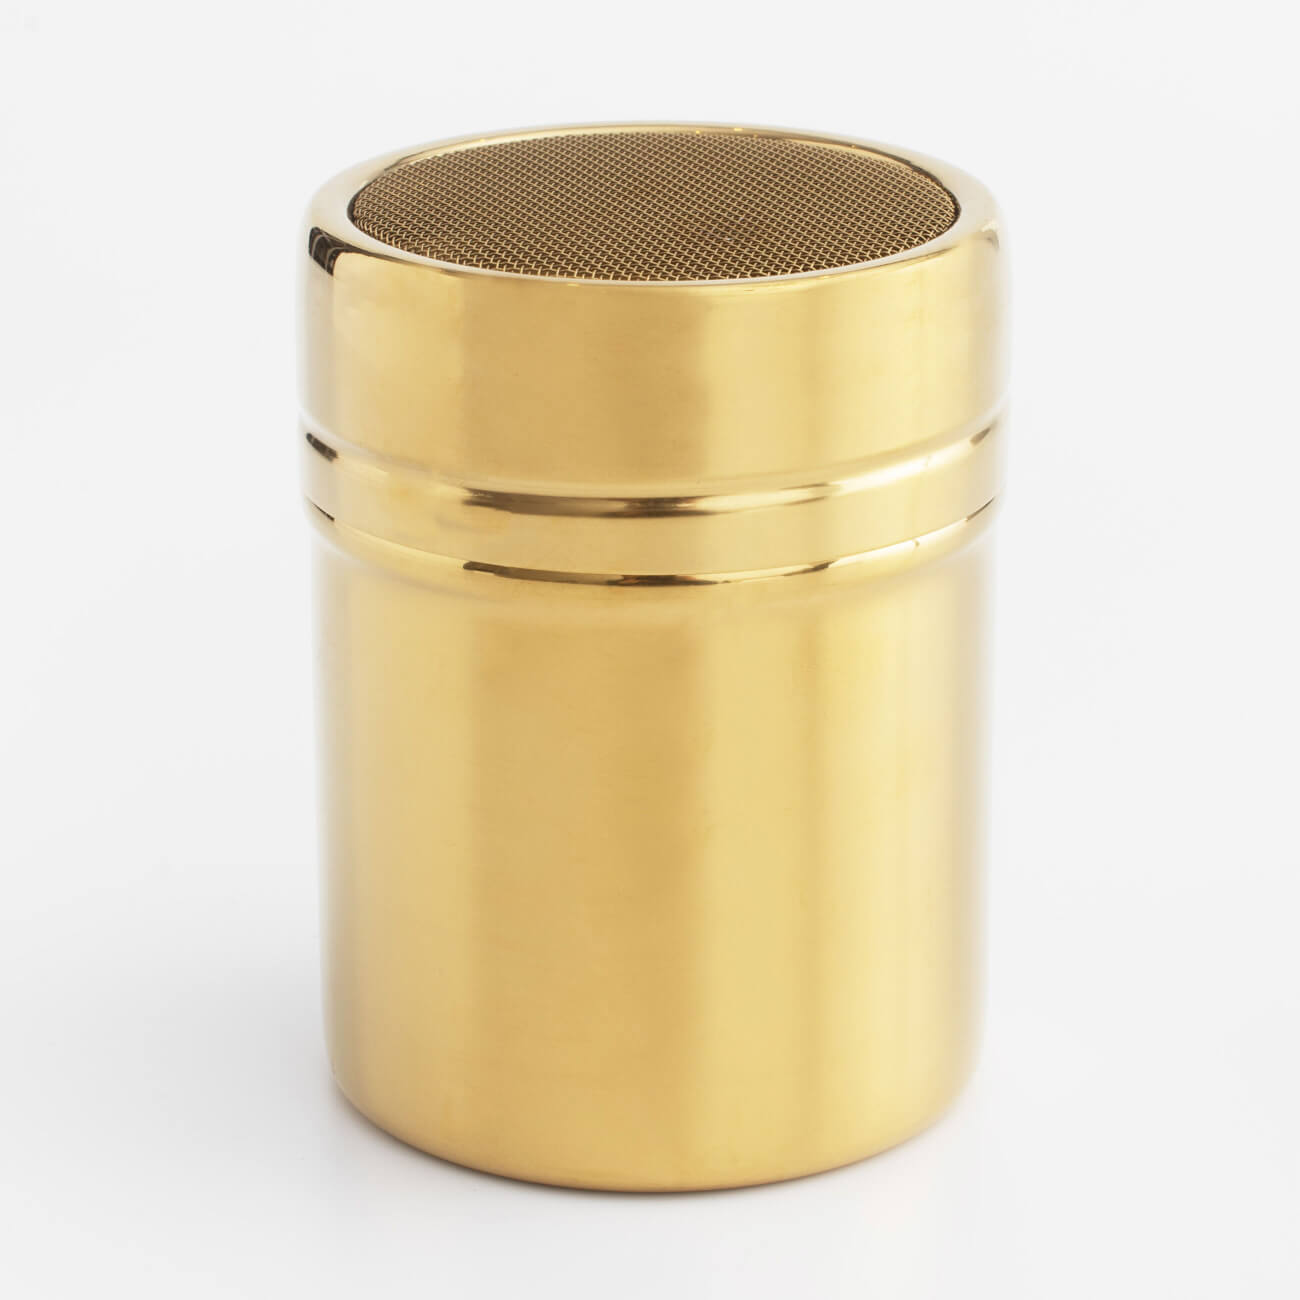 Сито-кружка, 9х7 см, с крышкой, сталь/пластик, золотистое, Classic gold кружка сито для сыпучих продуктов regent inox